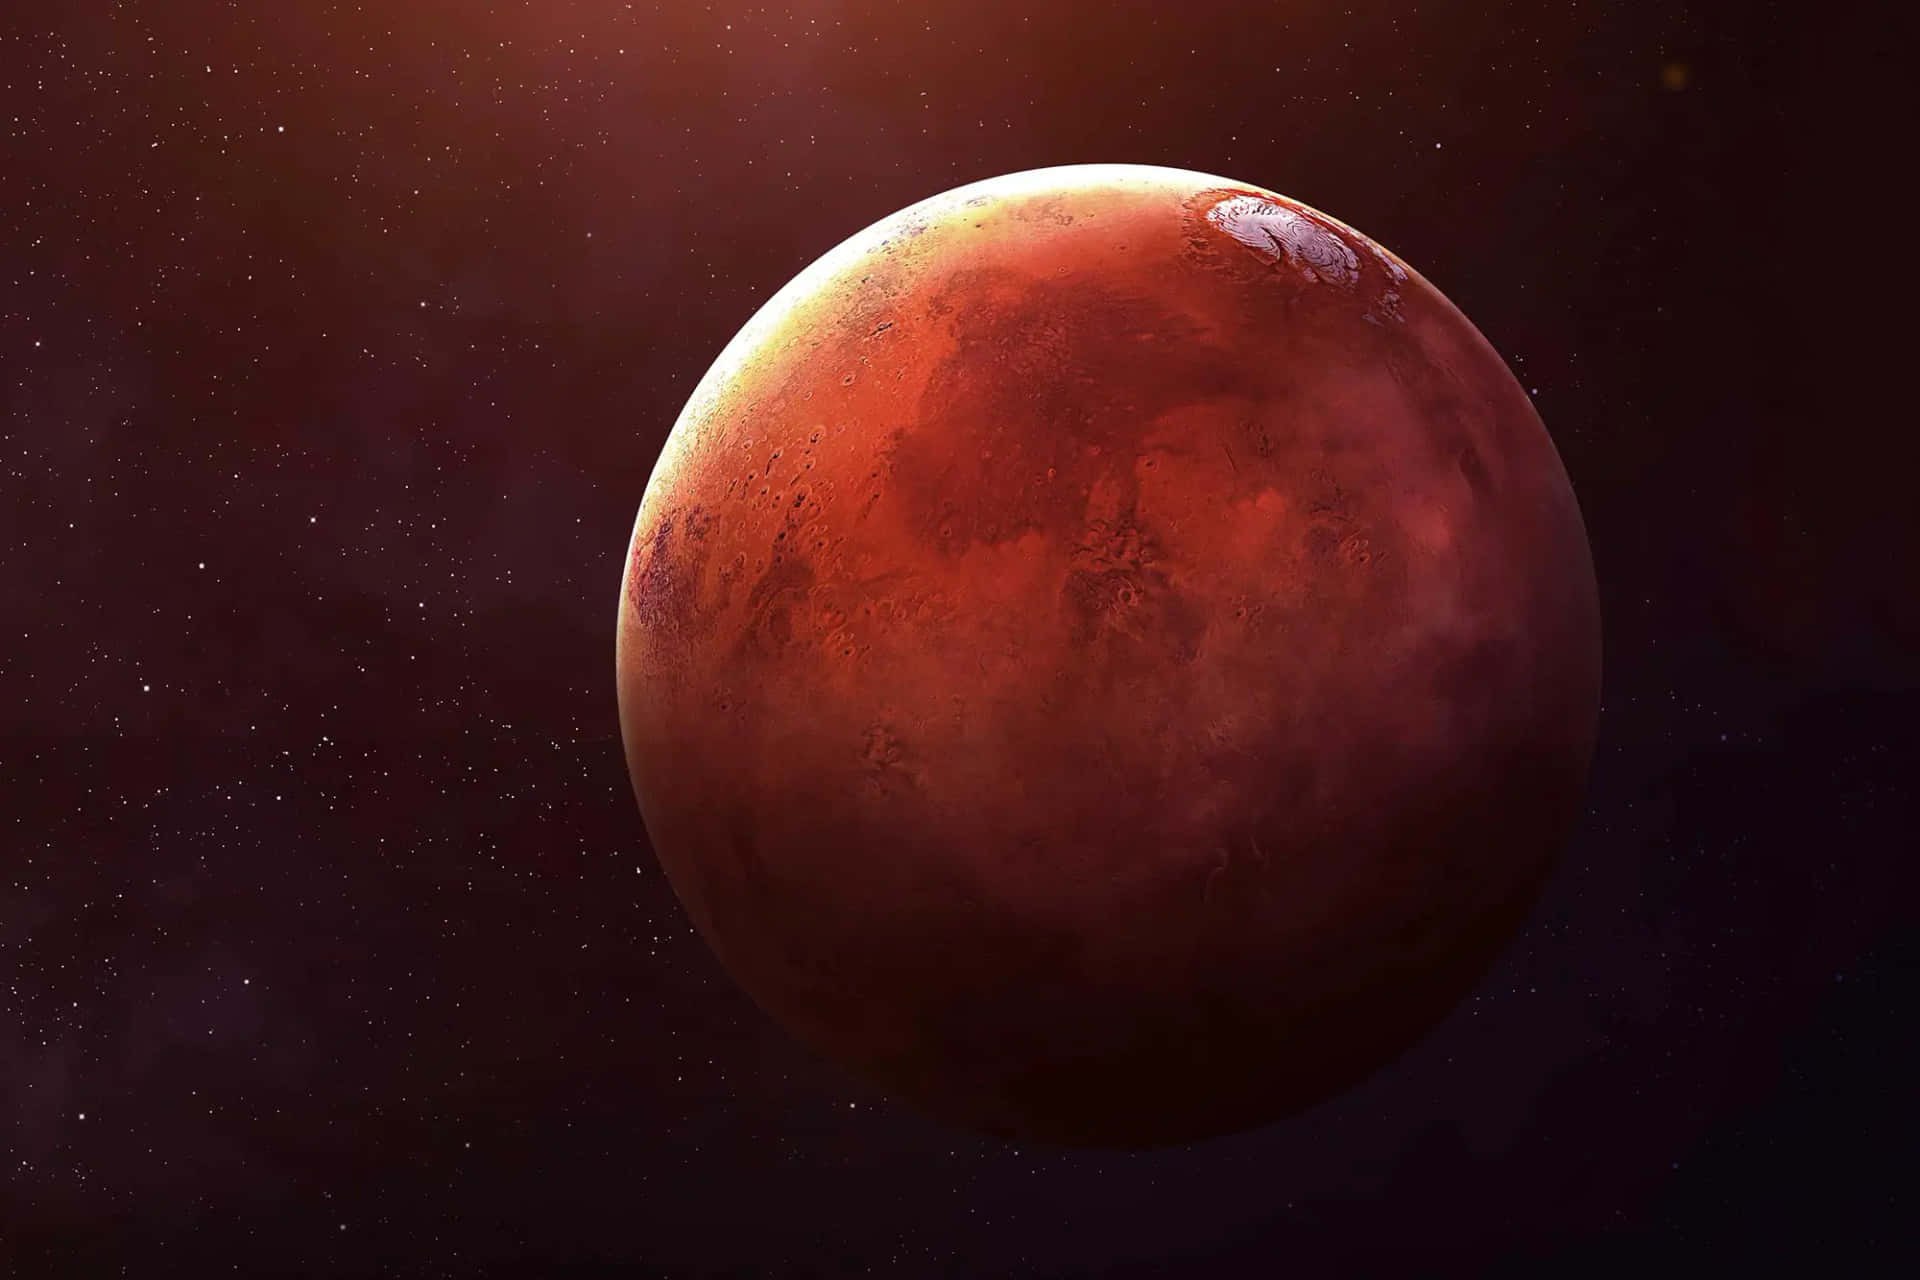 Maravíllatecon El Cautivador Paisaje Del Planeta Rojo, Marte.